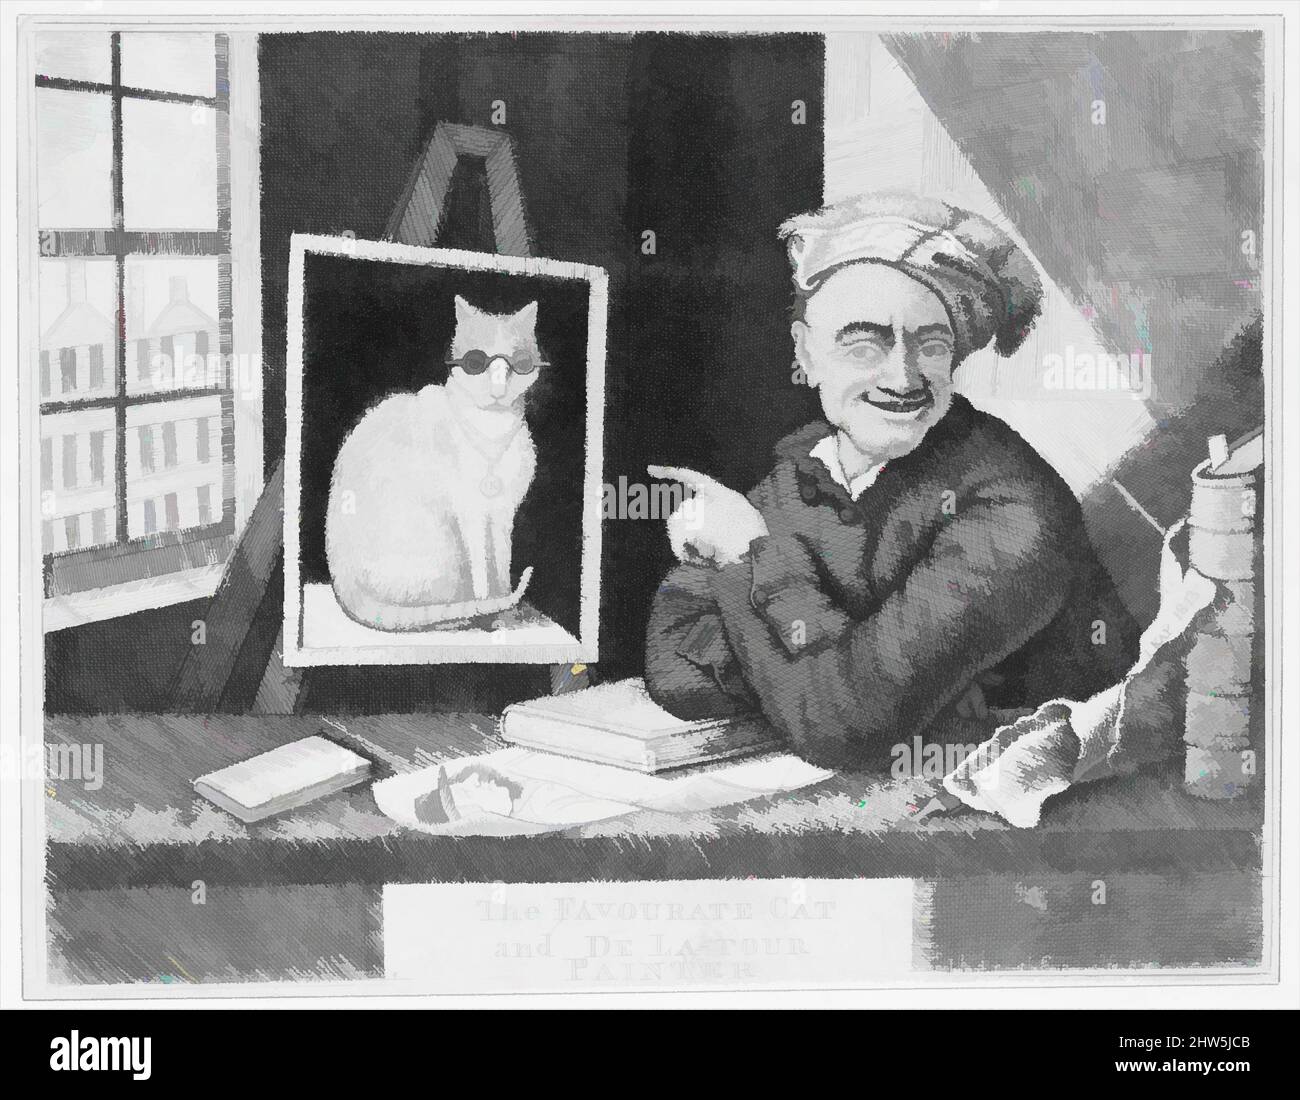 Peintre de chat Banque de photographies et d'images à haute résolution -  Alamy